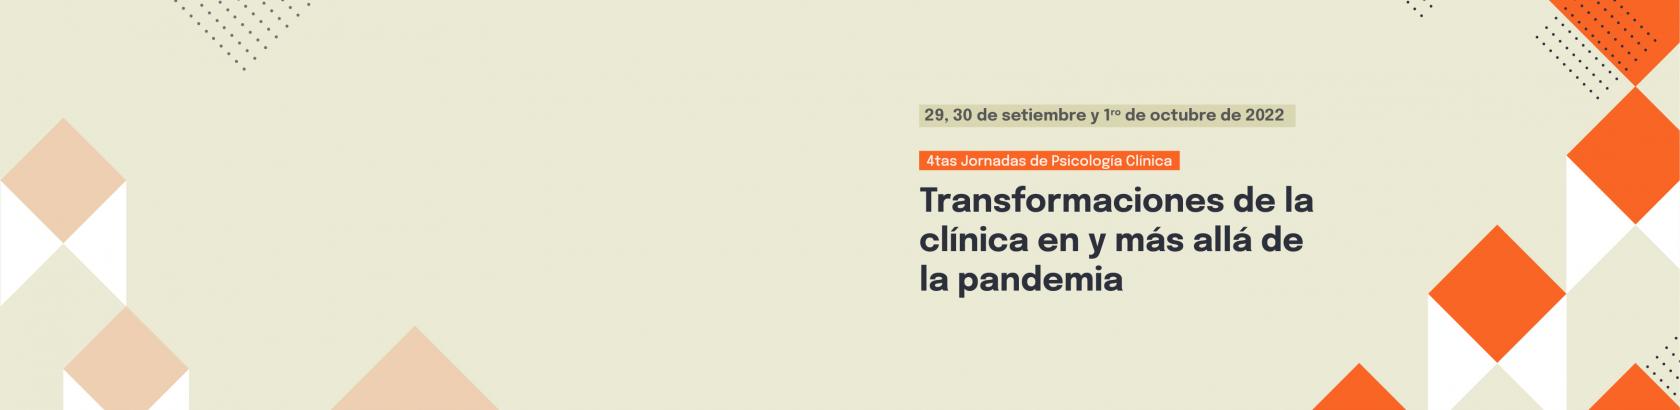 4tas. Jornadas del Instituto de Psicología Clínica: "Transformaciones de la clínica en y más allá de la pandemia"